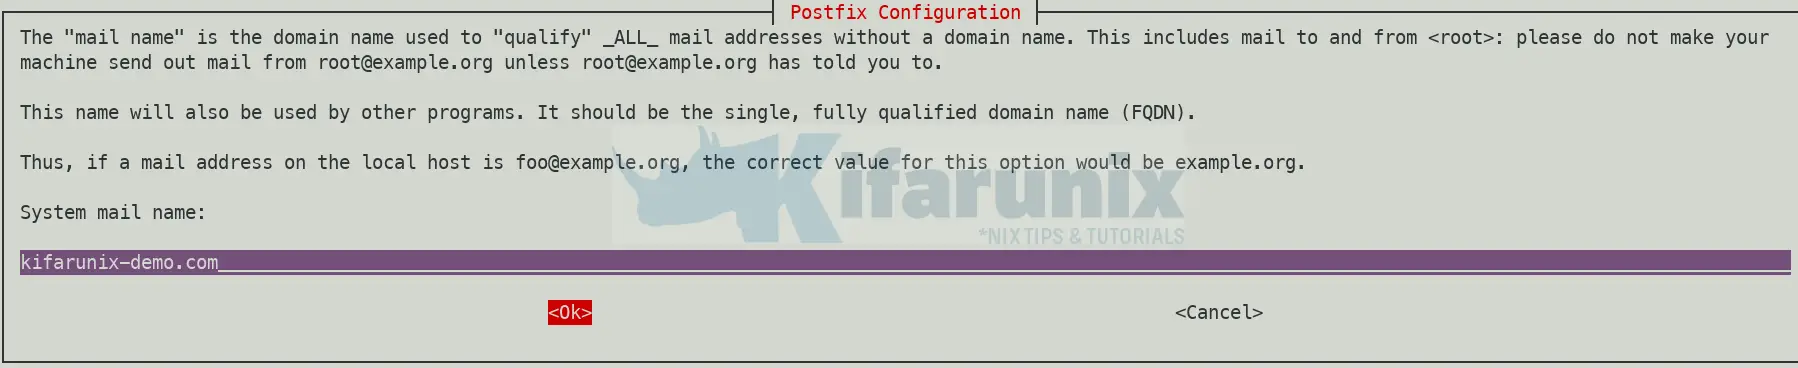 Configure Postfix to Use Gmail SMTP on Ubuntu 20.04